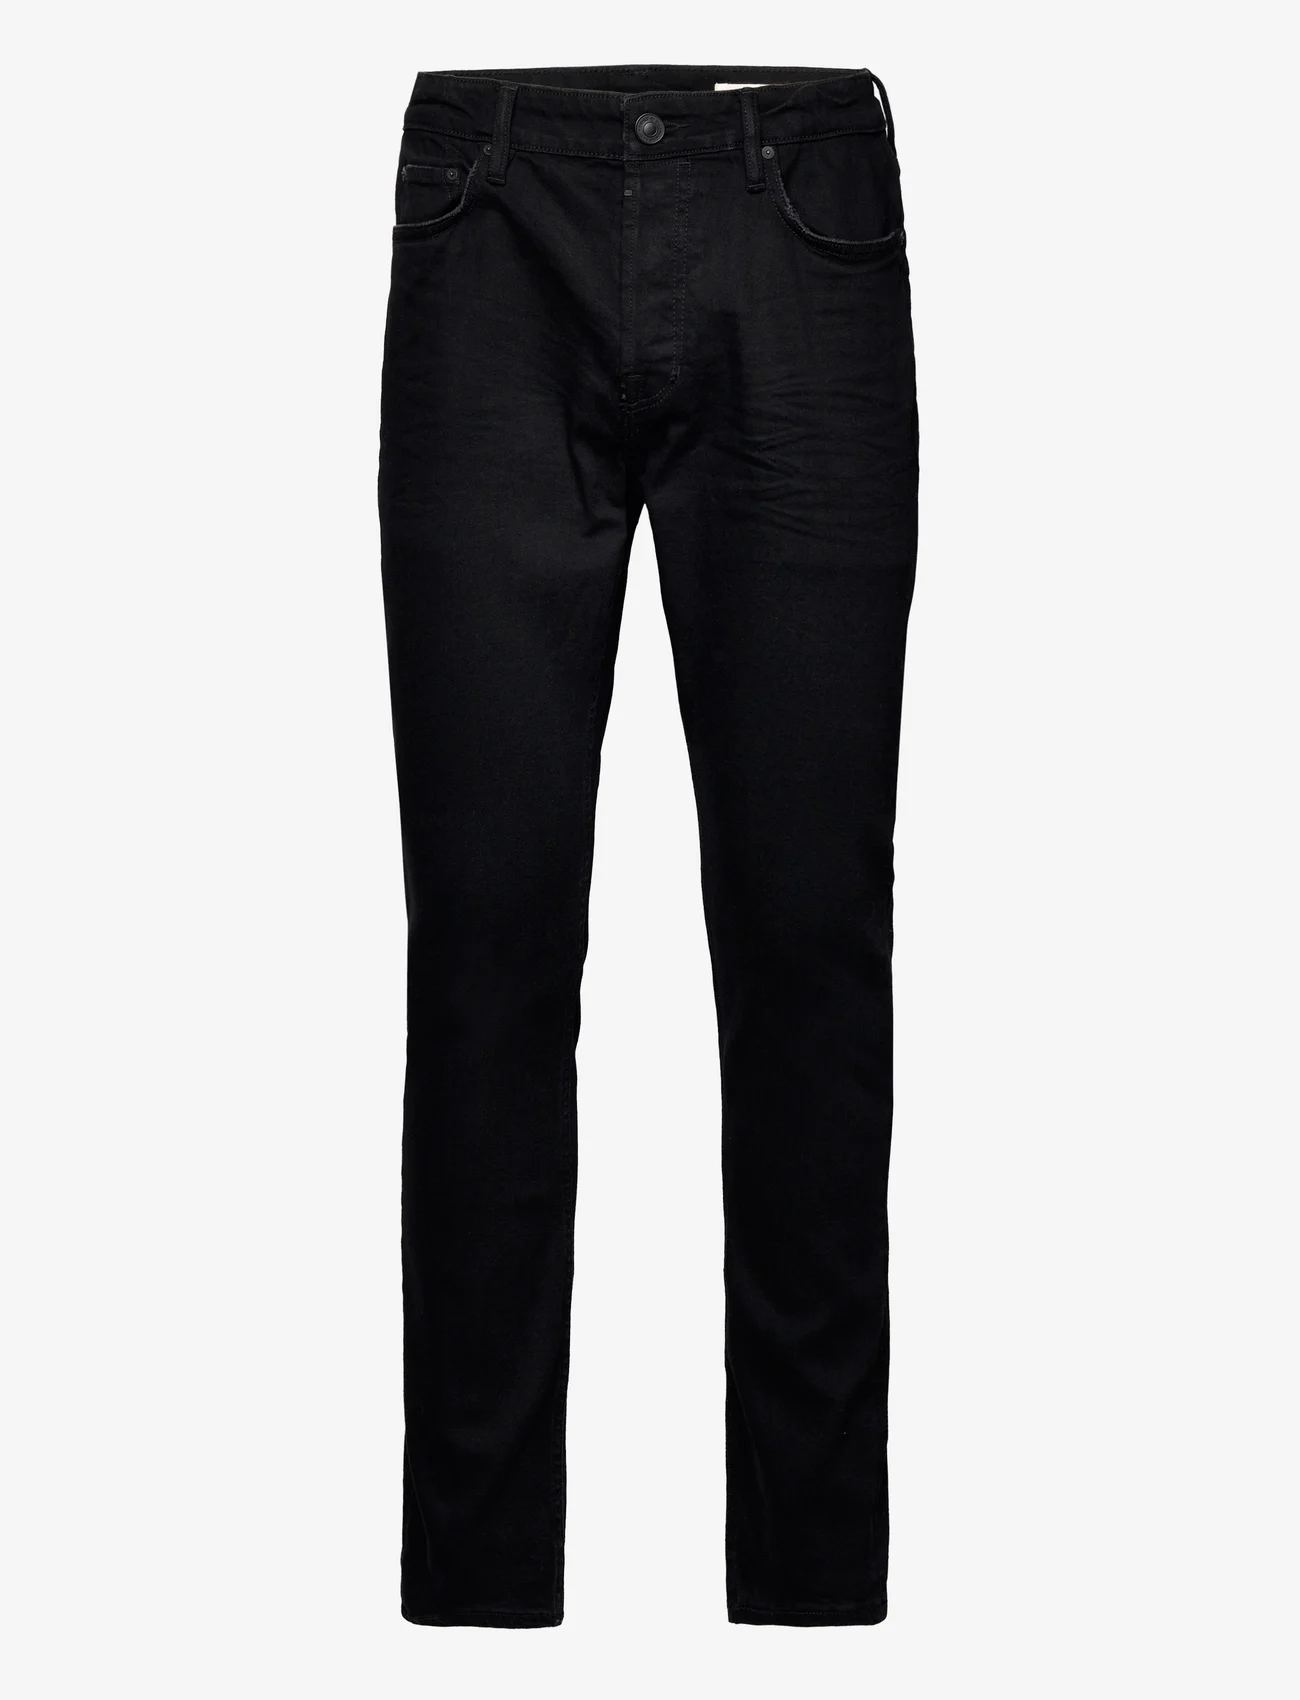 AllSaints - REX - slim fit jeans - jet black - 0